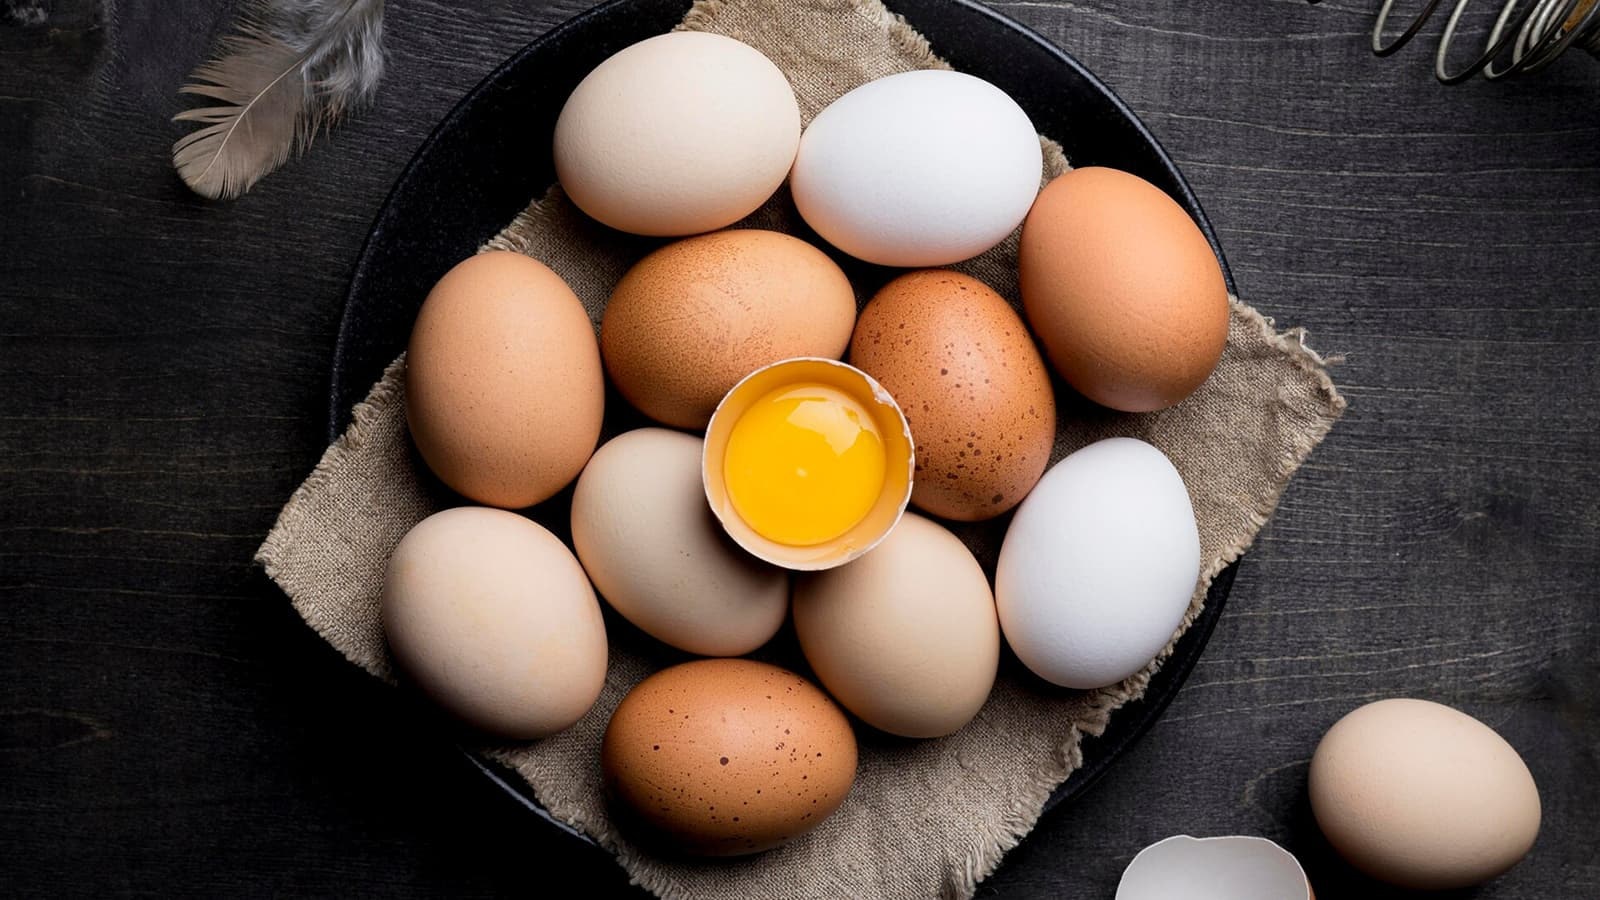 Wie gesund sind Eier? Bild, auf dem mehrere Eier auf einem Teller zu sehen sind.